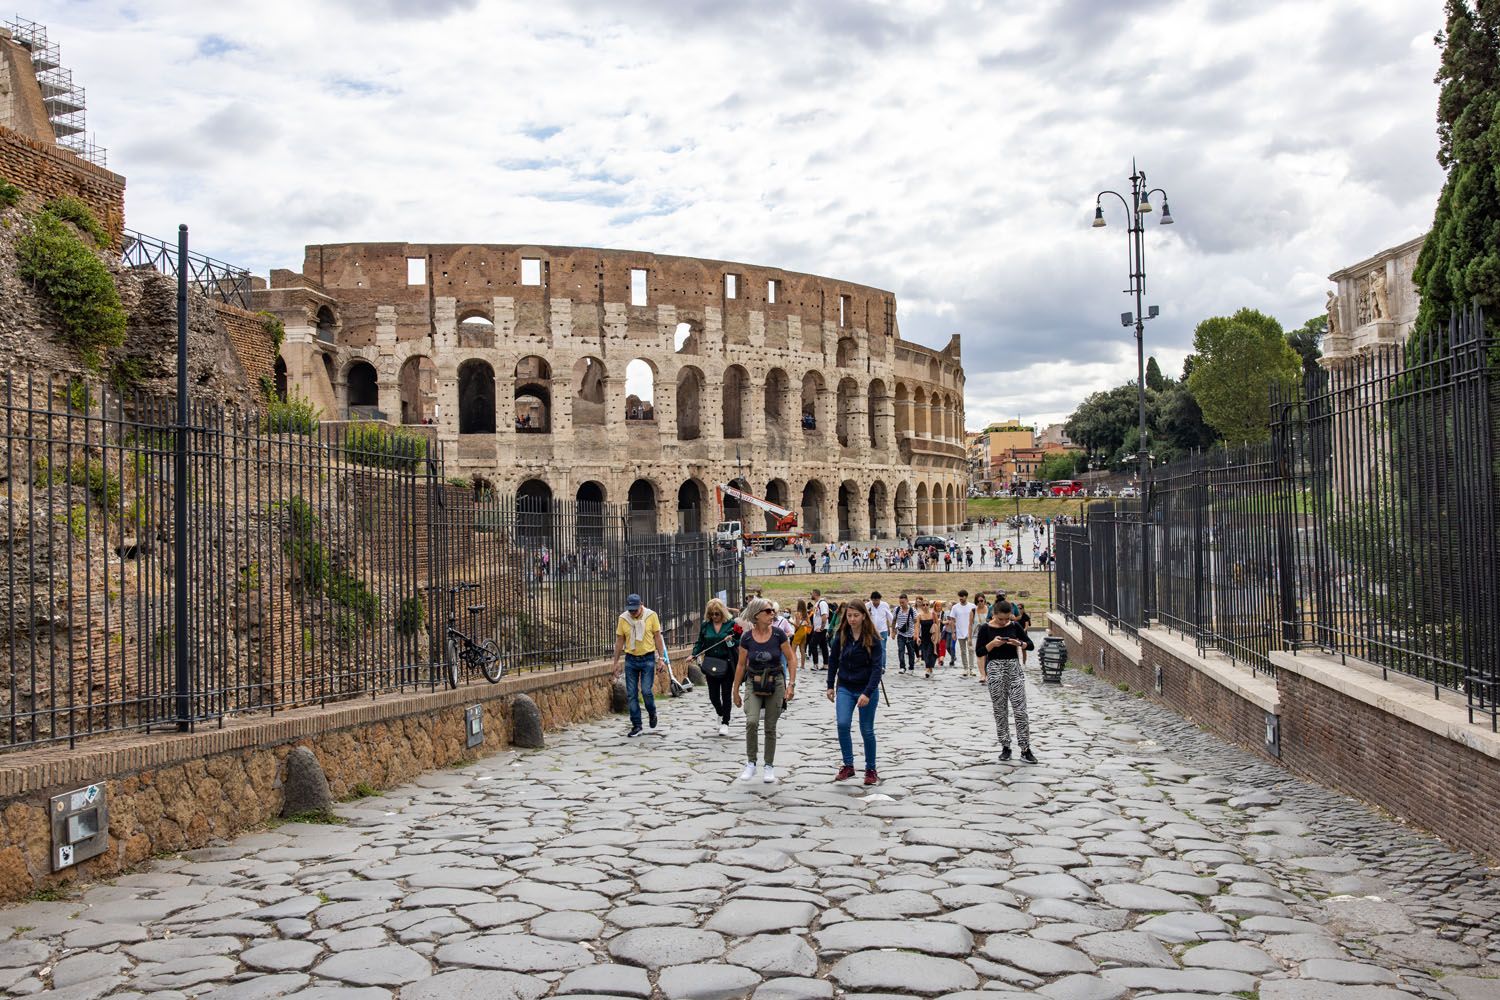 Via Sacra Rome | How to Visit the Colosseum